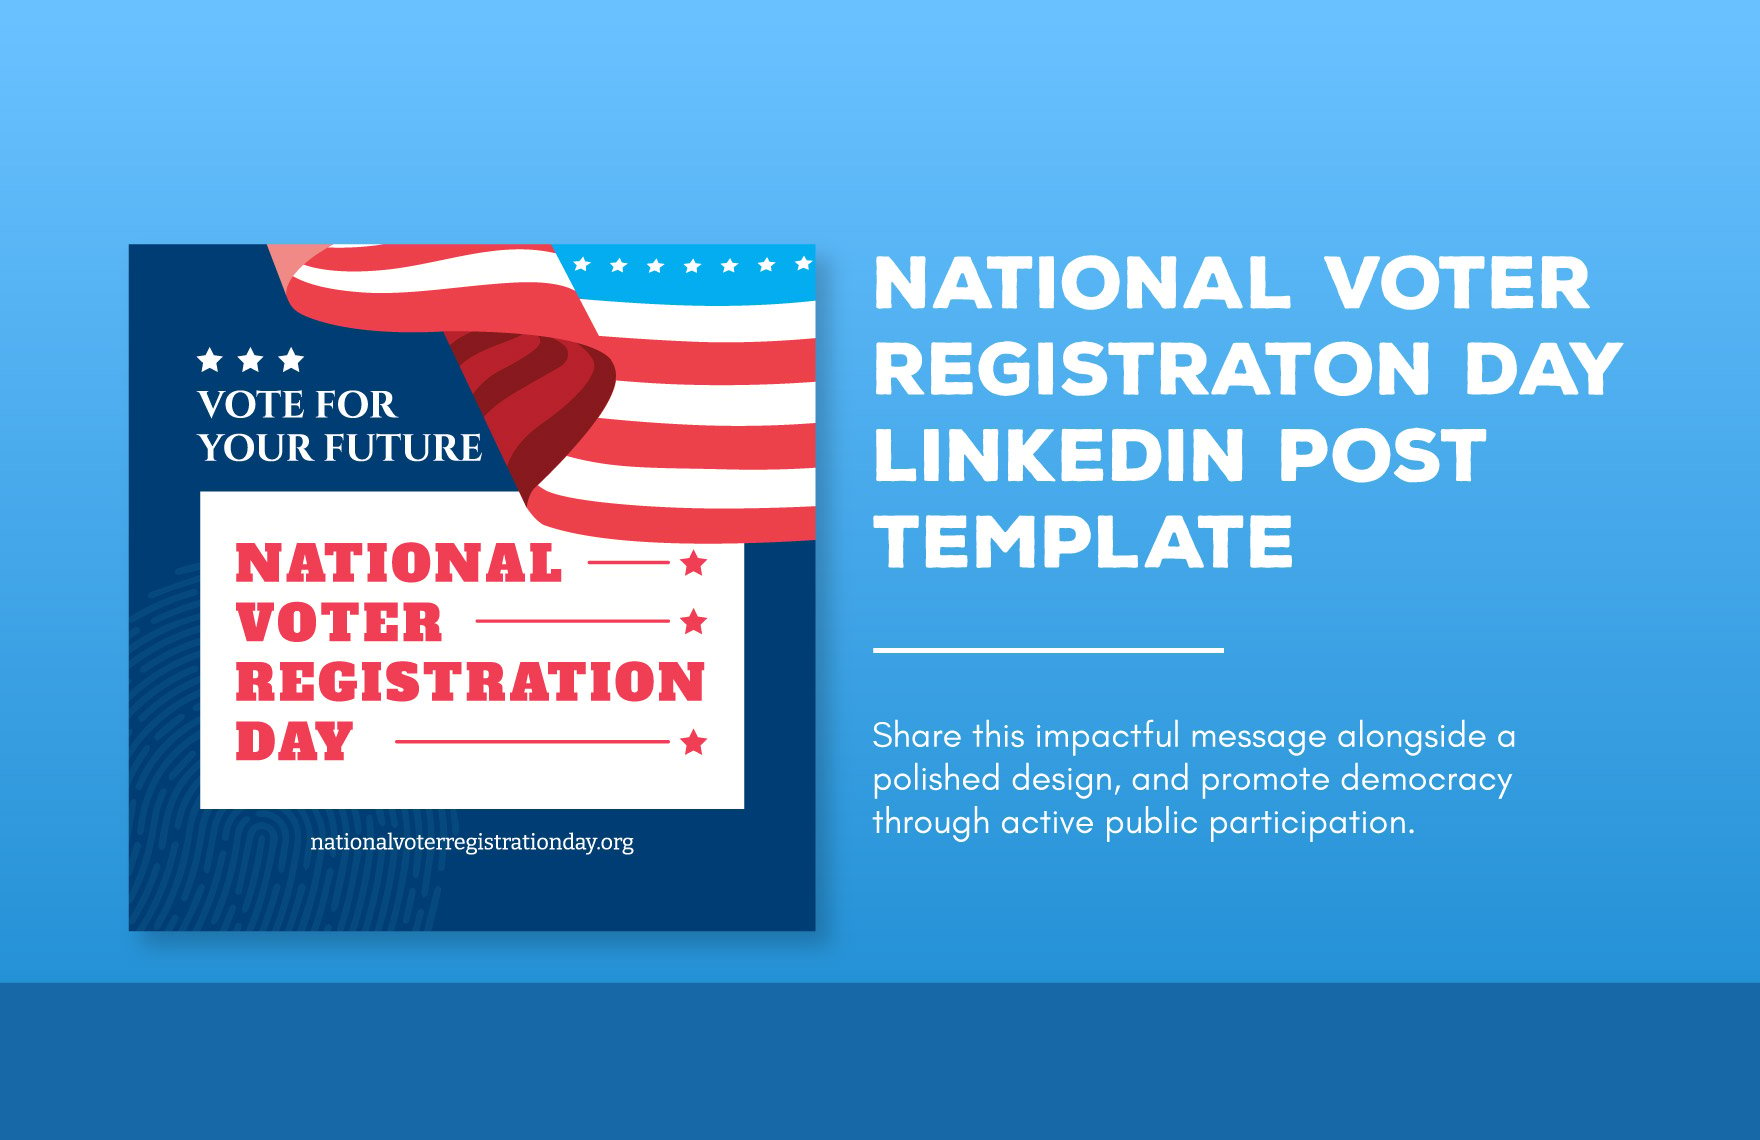 National Voter Registration Day LinkedIn Post Template